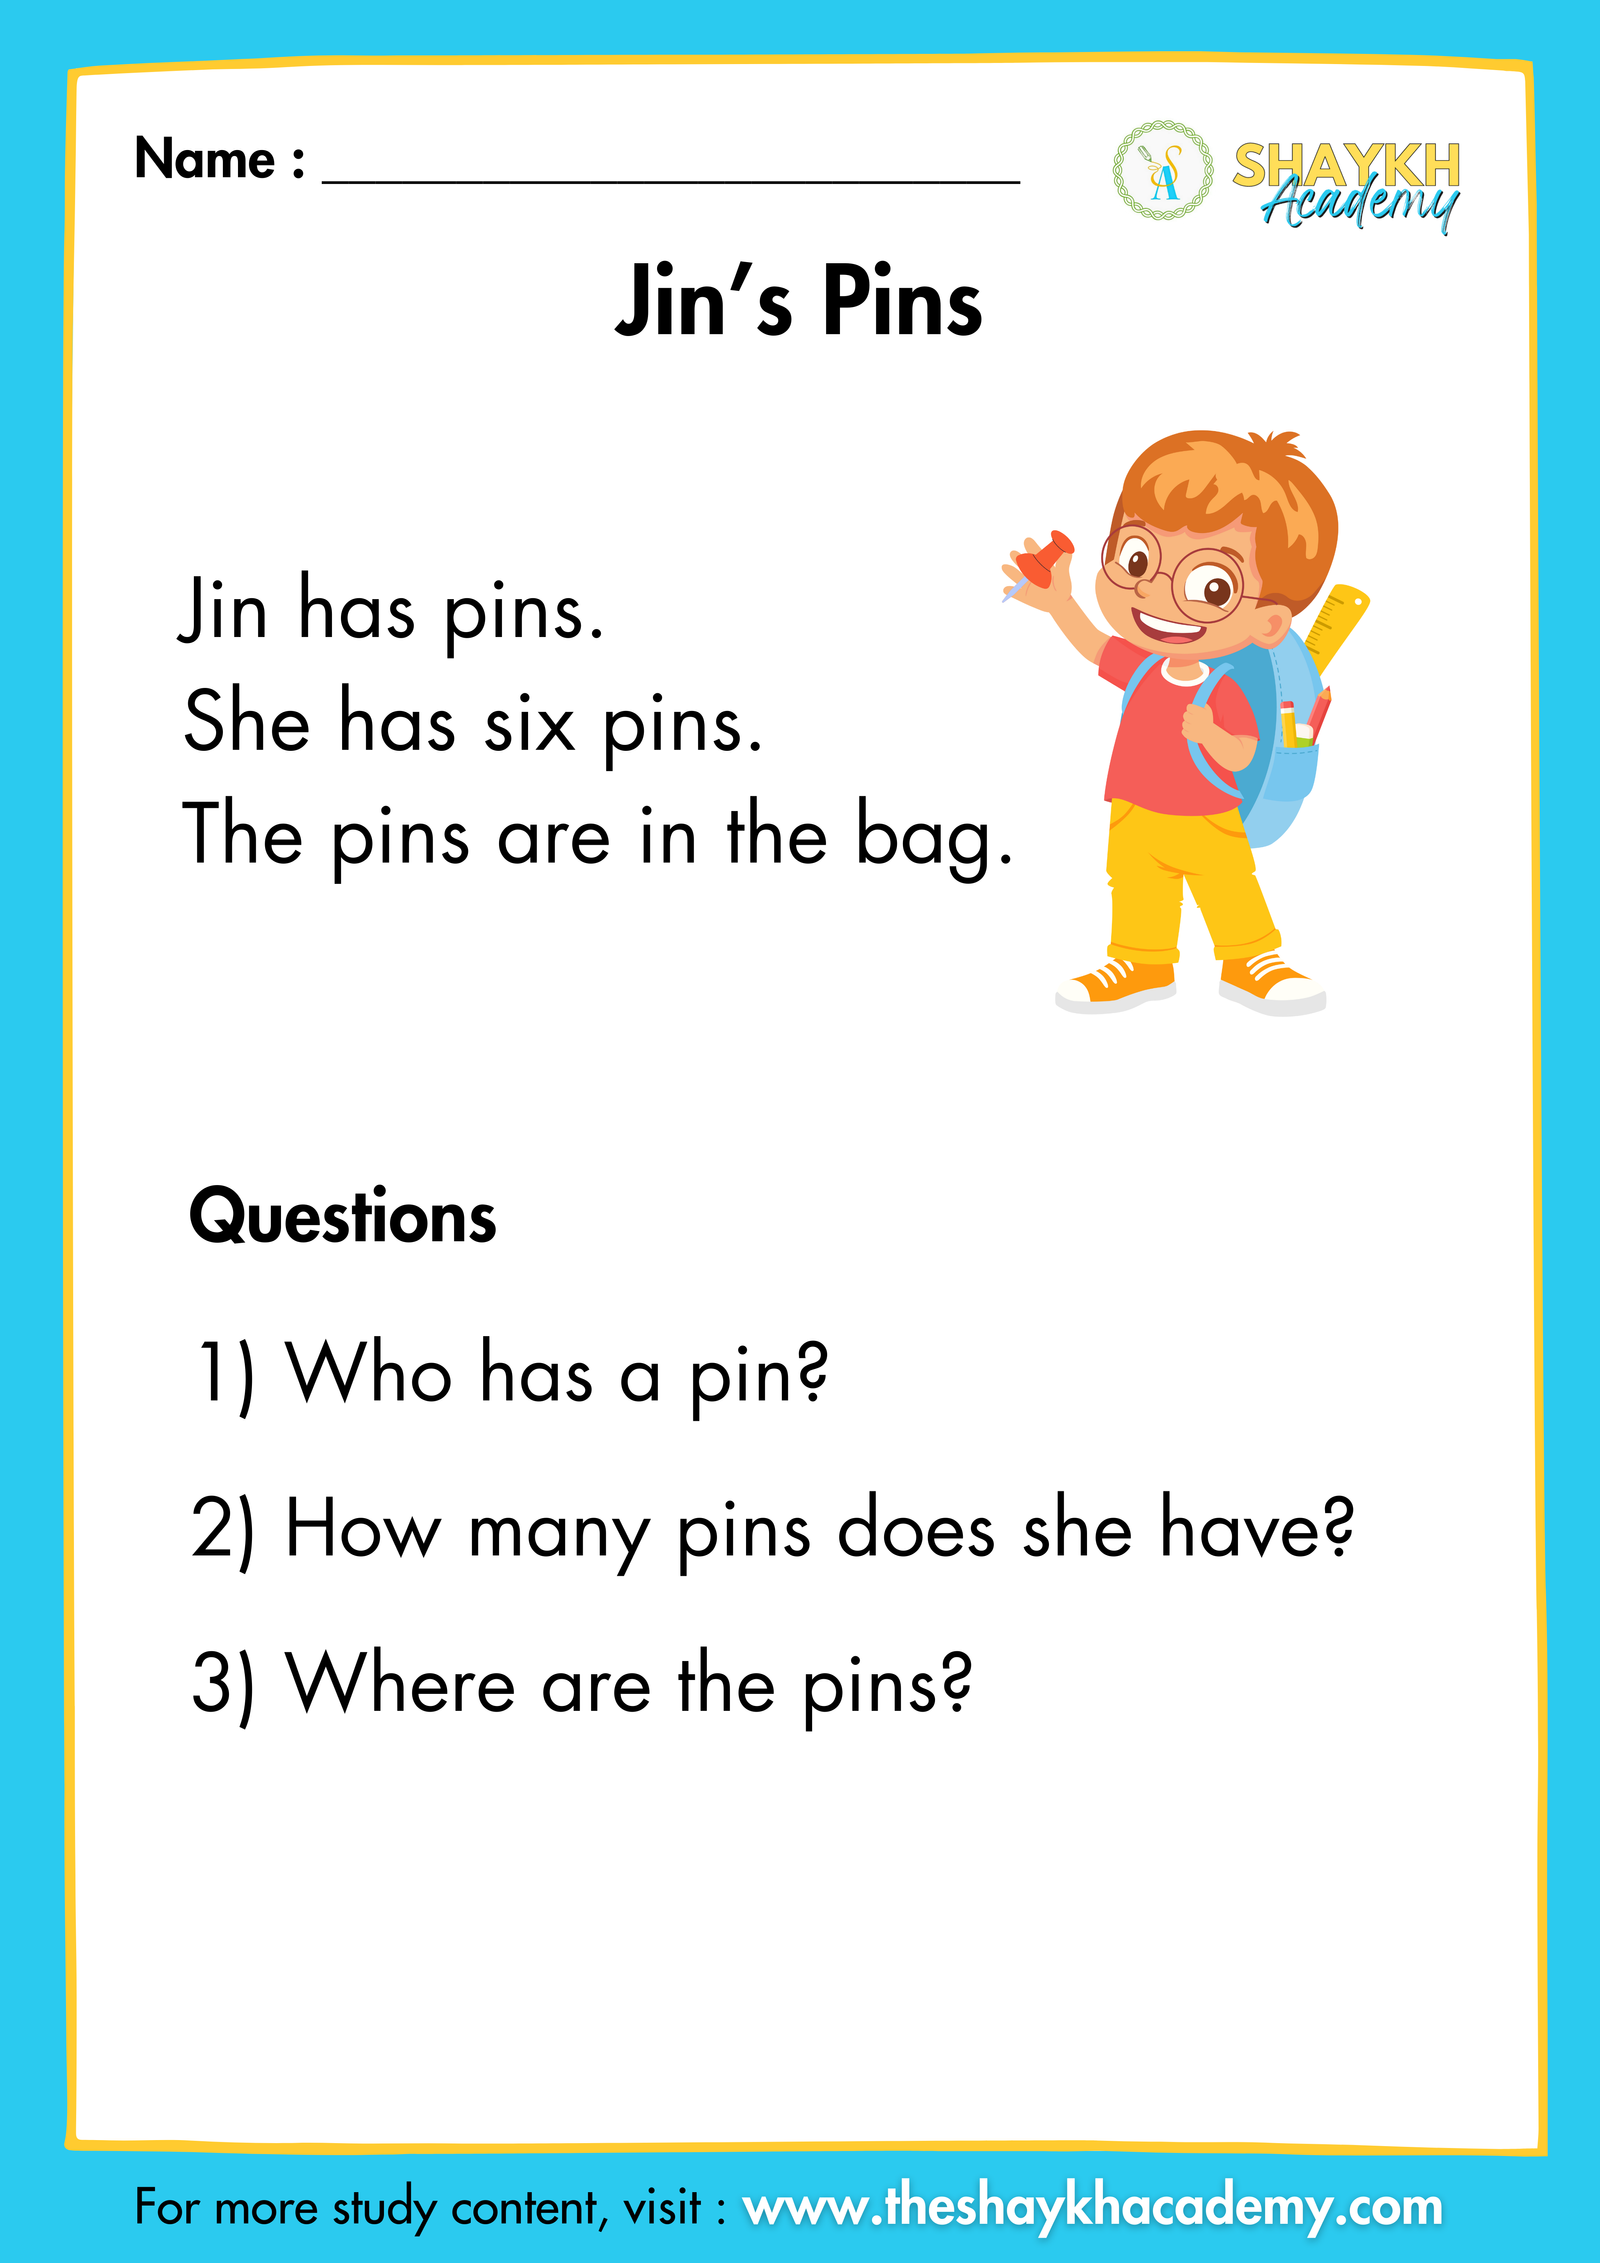 Jin’s Pins